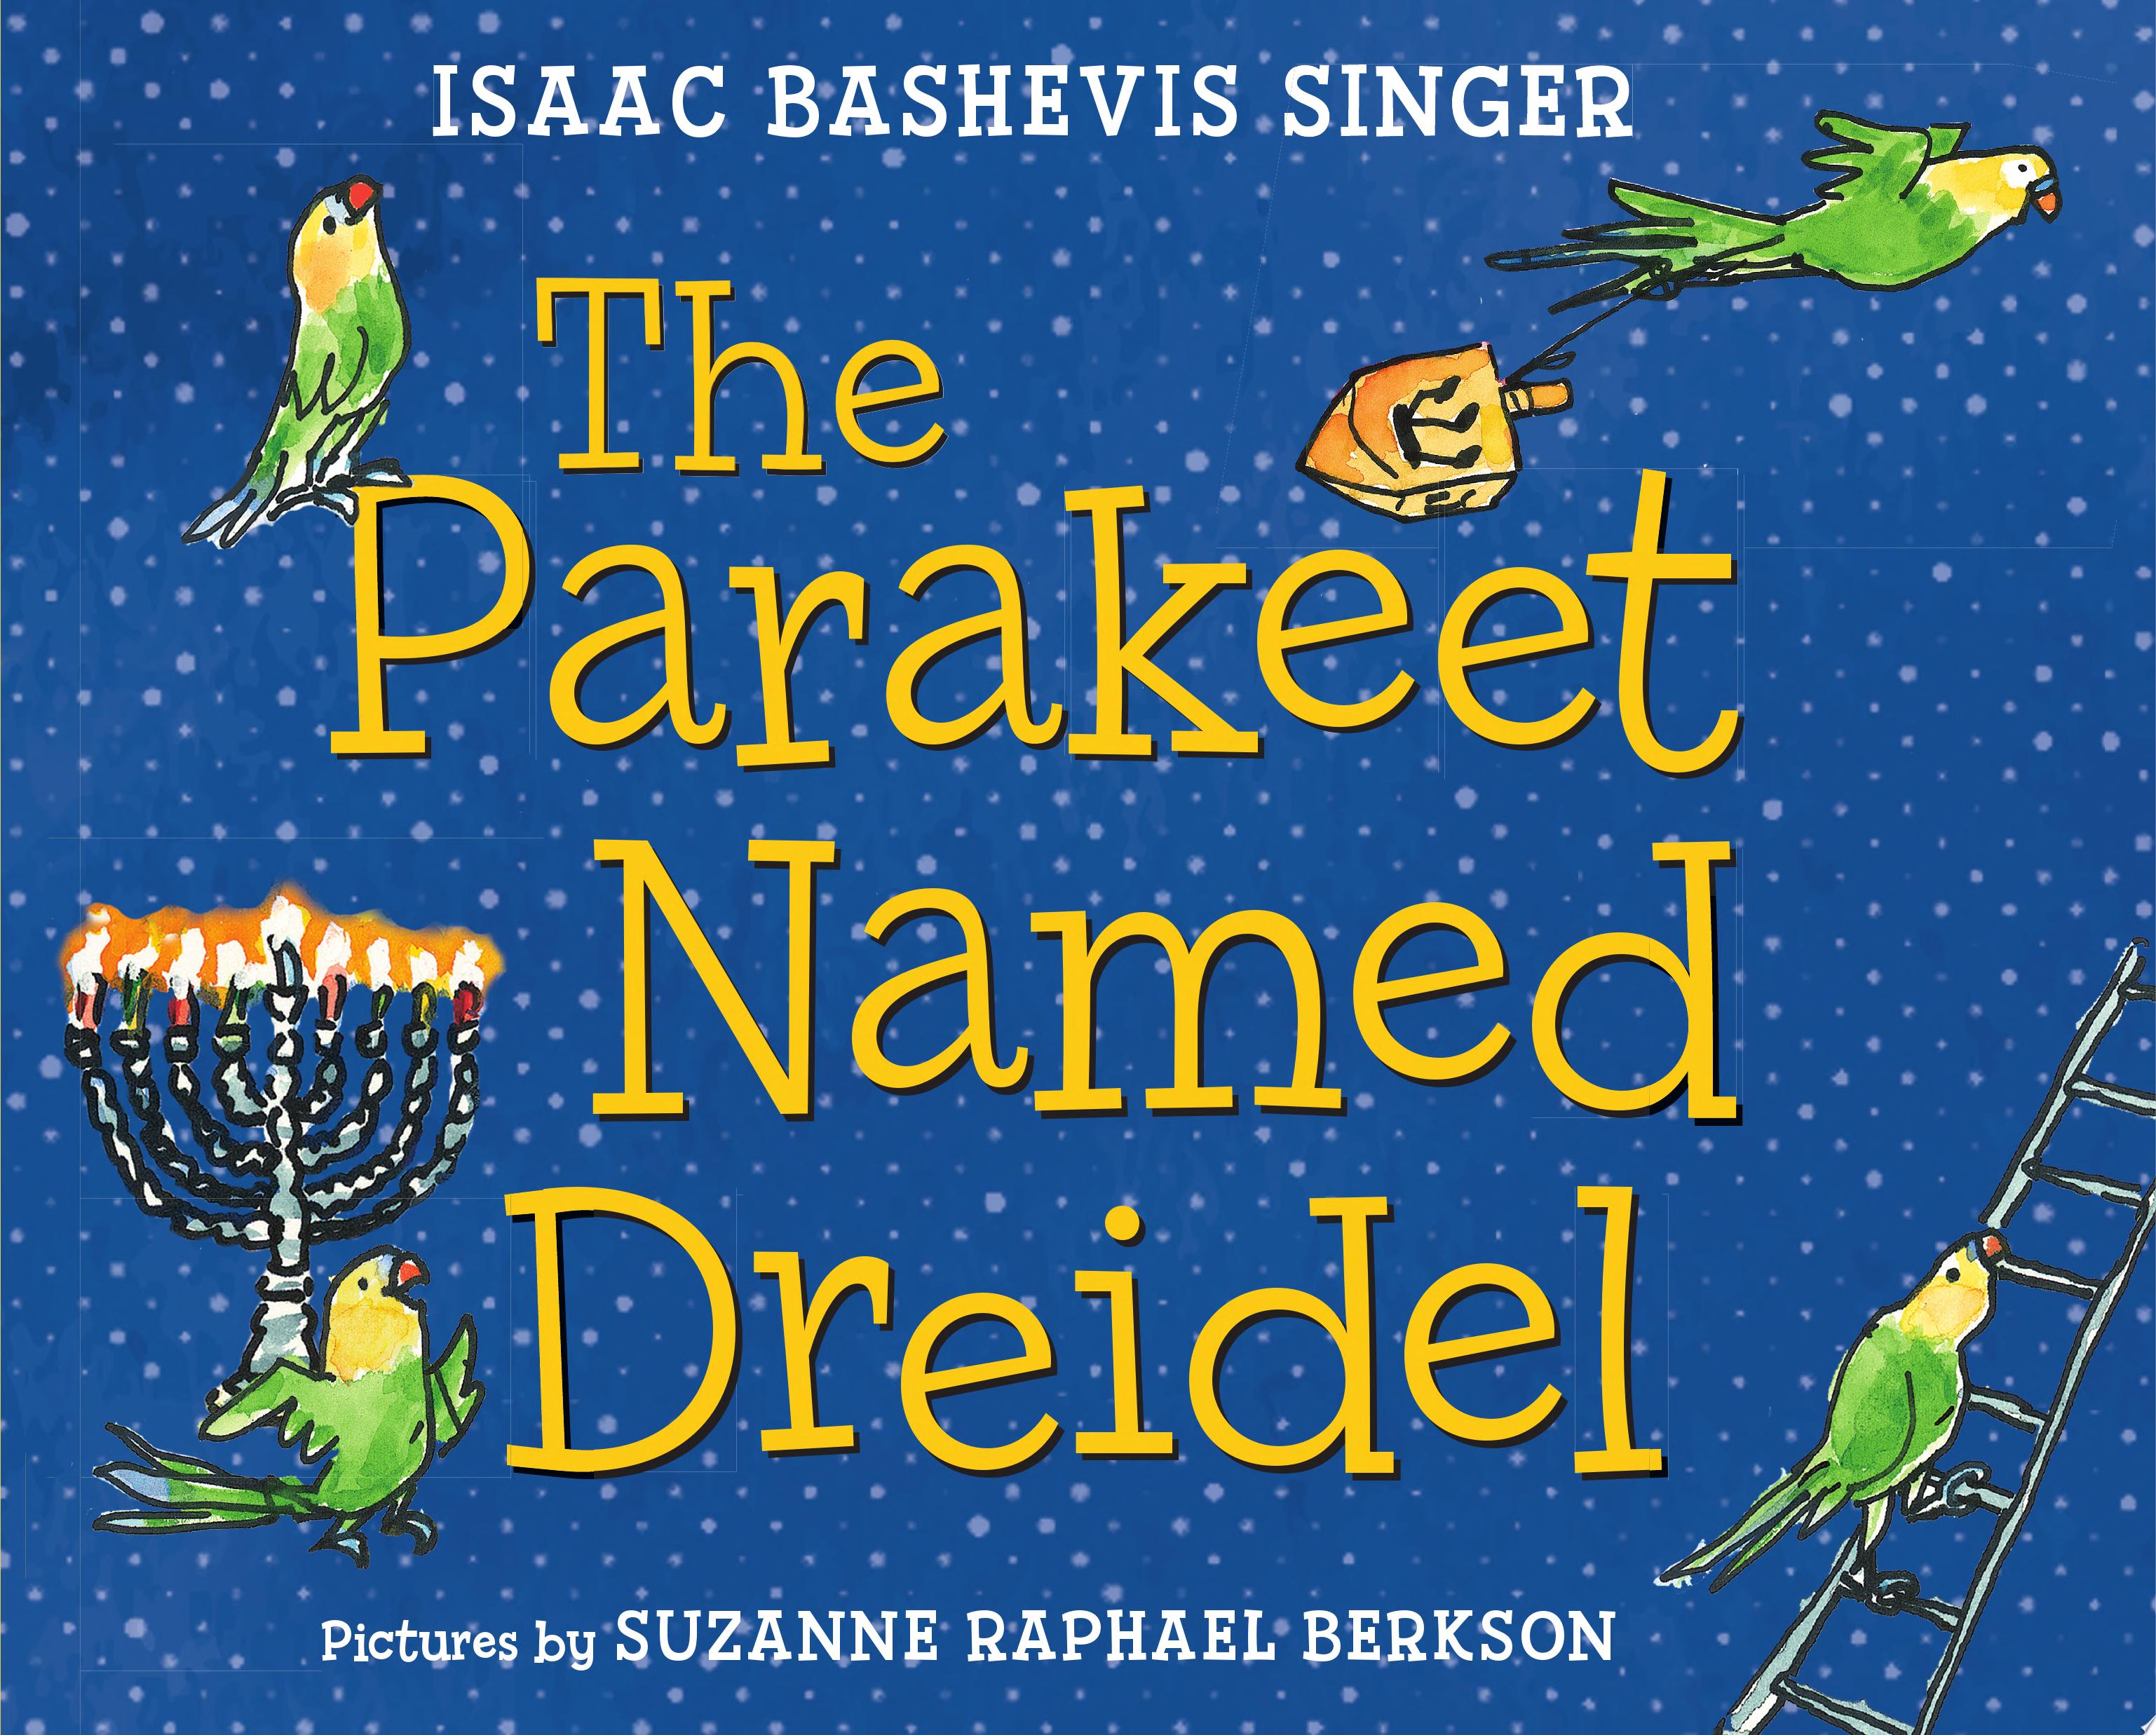 Image for "The Parakeet Named Dreidel"